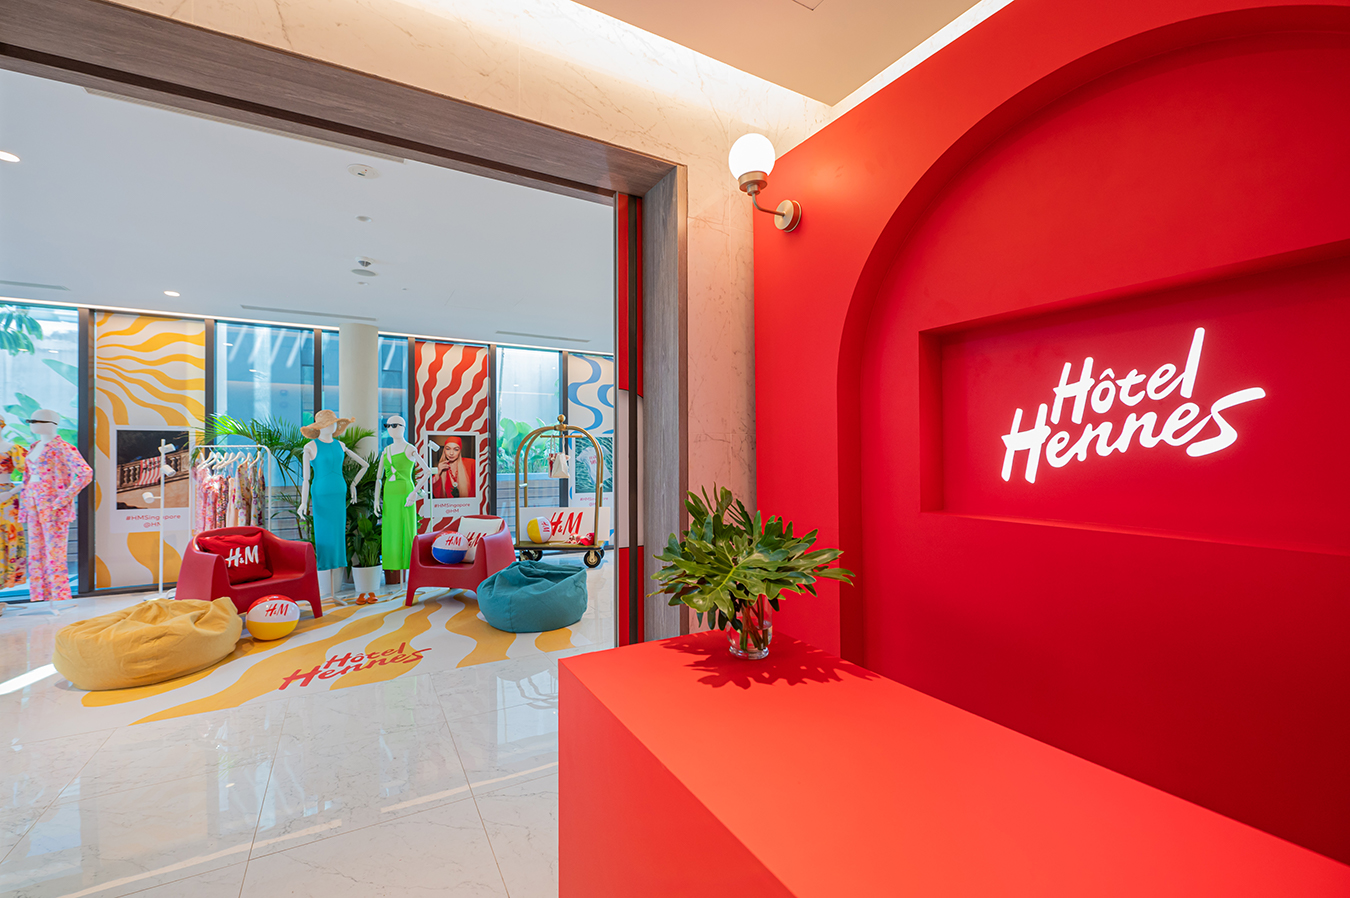 H&M Hotel Hennes mùa Hè